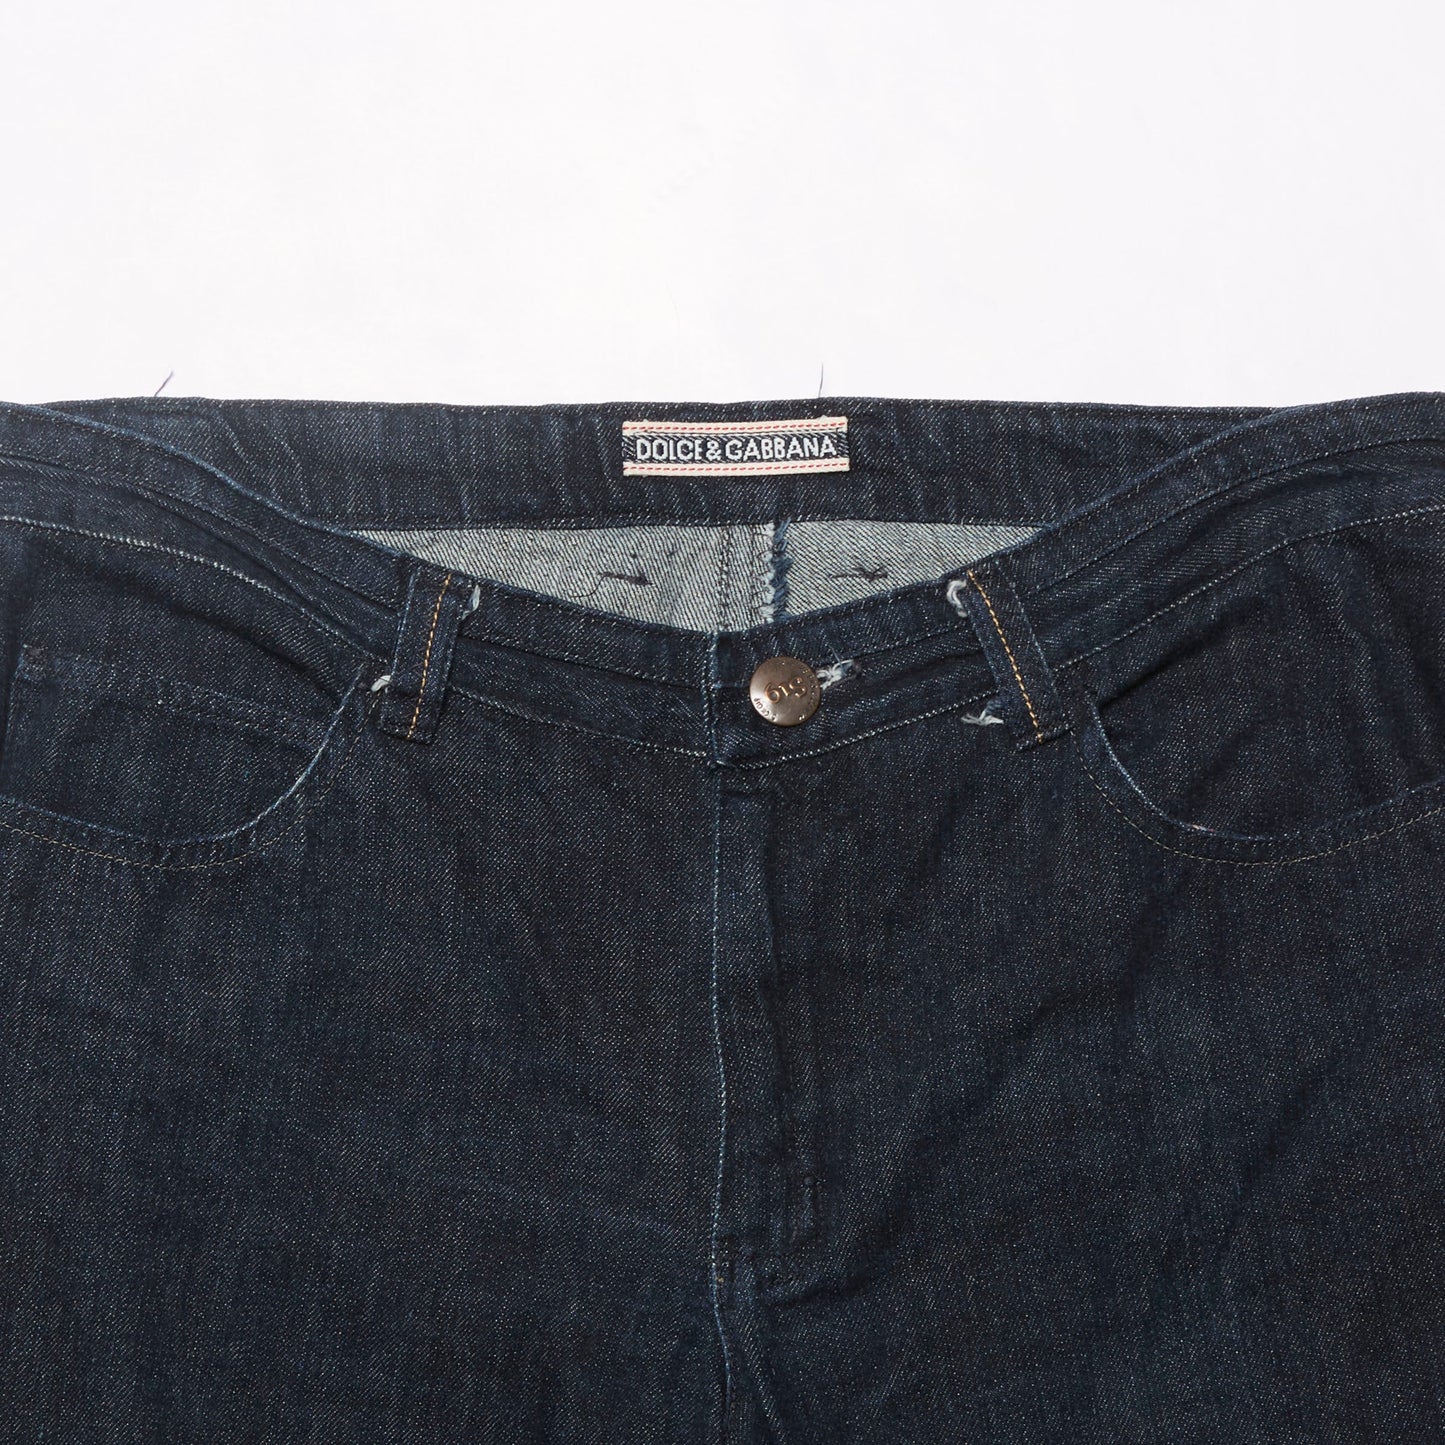 Dolce & Gabbana Boot Cut Denim Jeans - W32" L31"